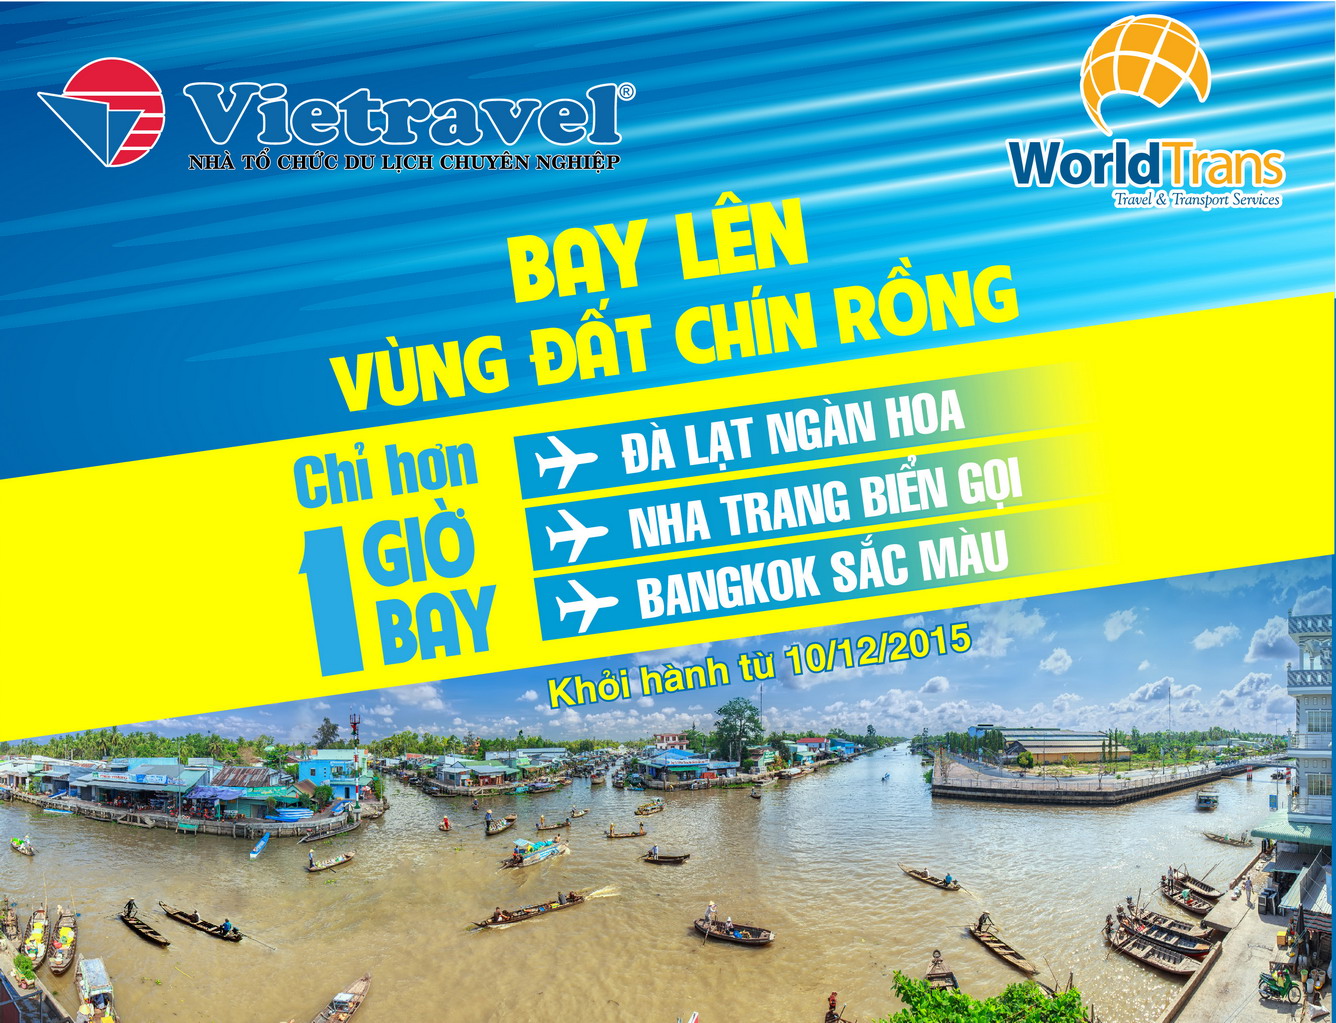 Vietravel khai trương hàng loạt chuyến bay charter từ Cần Thơ đến Đà Lạt ngàn hoa - Nha Trang biển gọi - Bangkok sắc màu